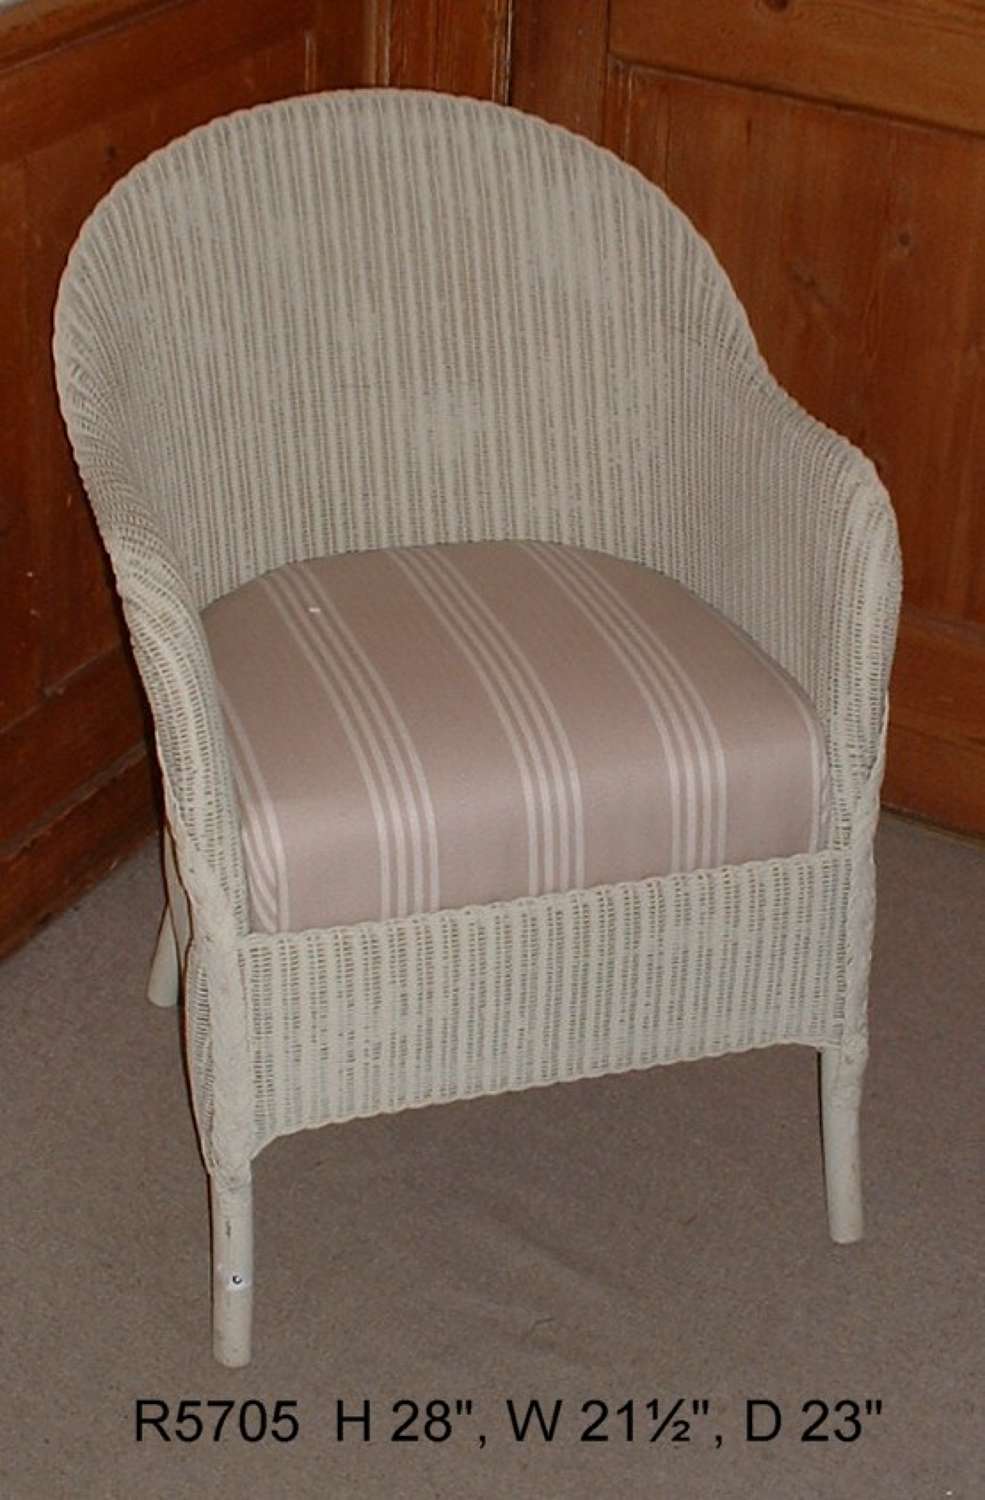 Lloyd Loom Chair